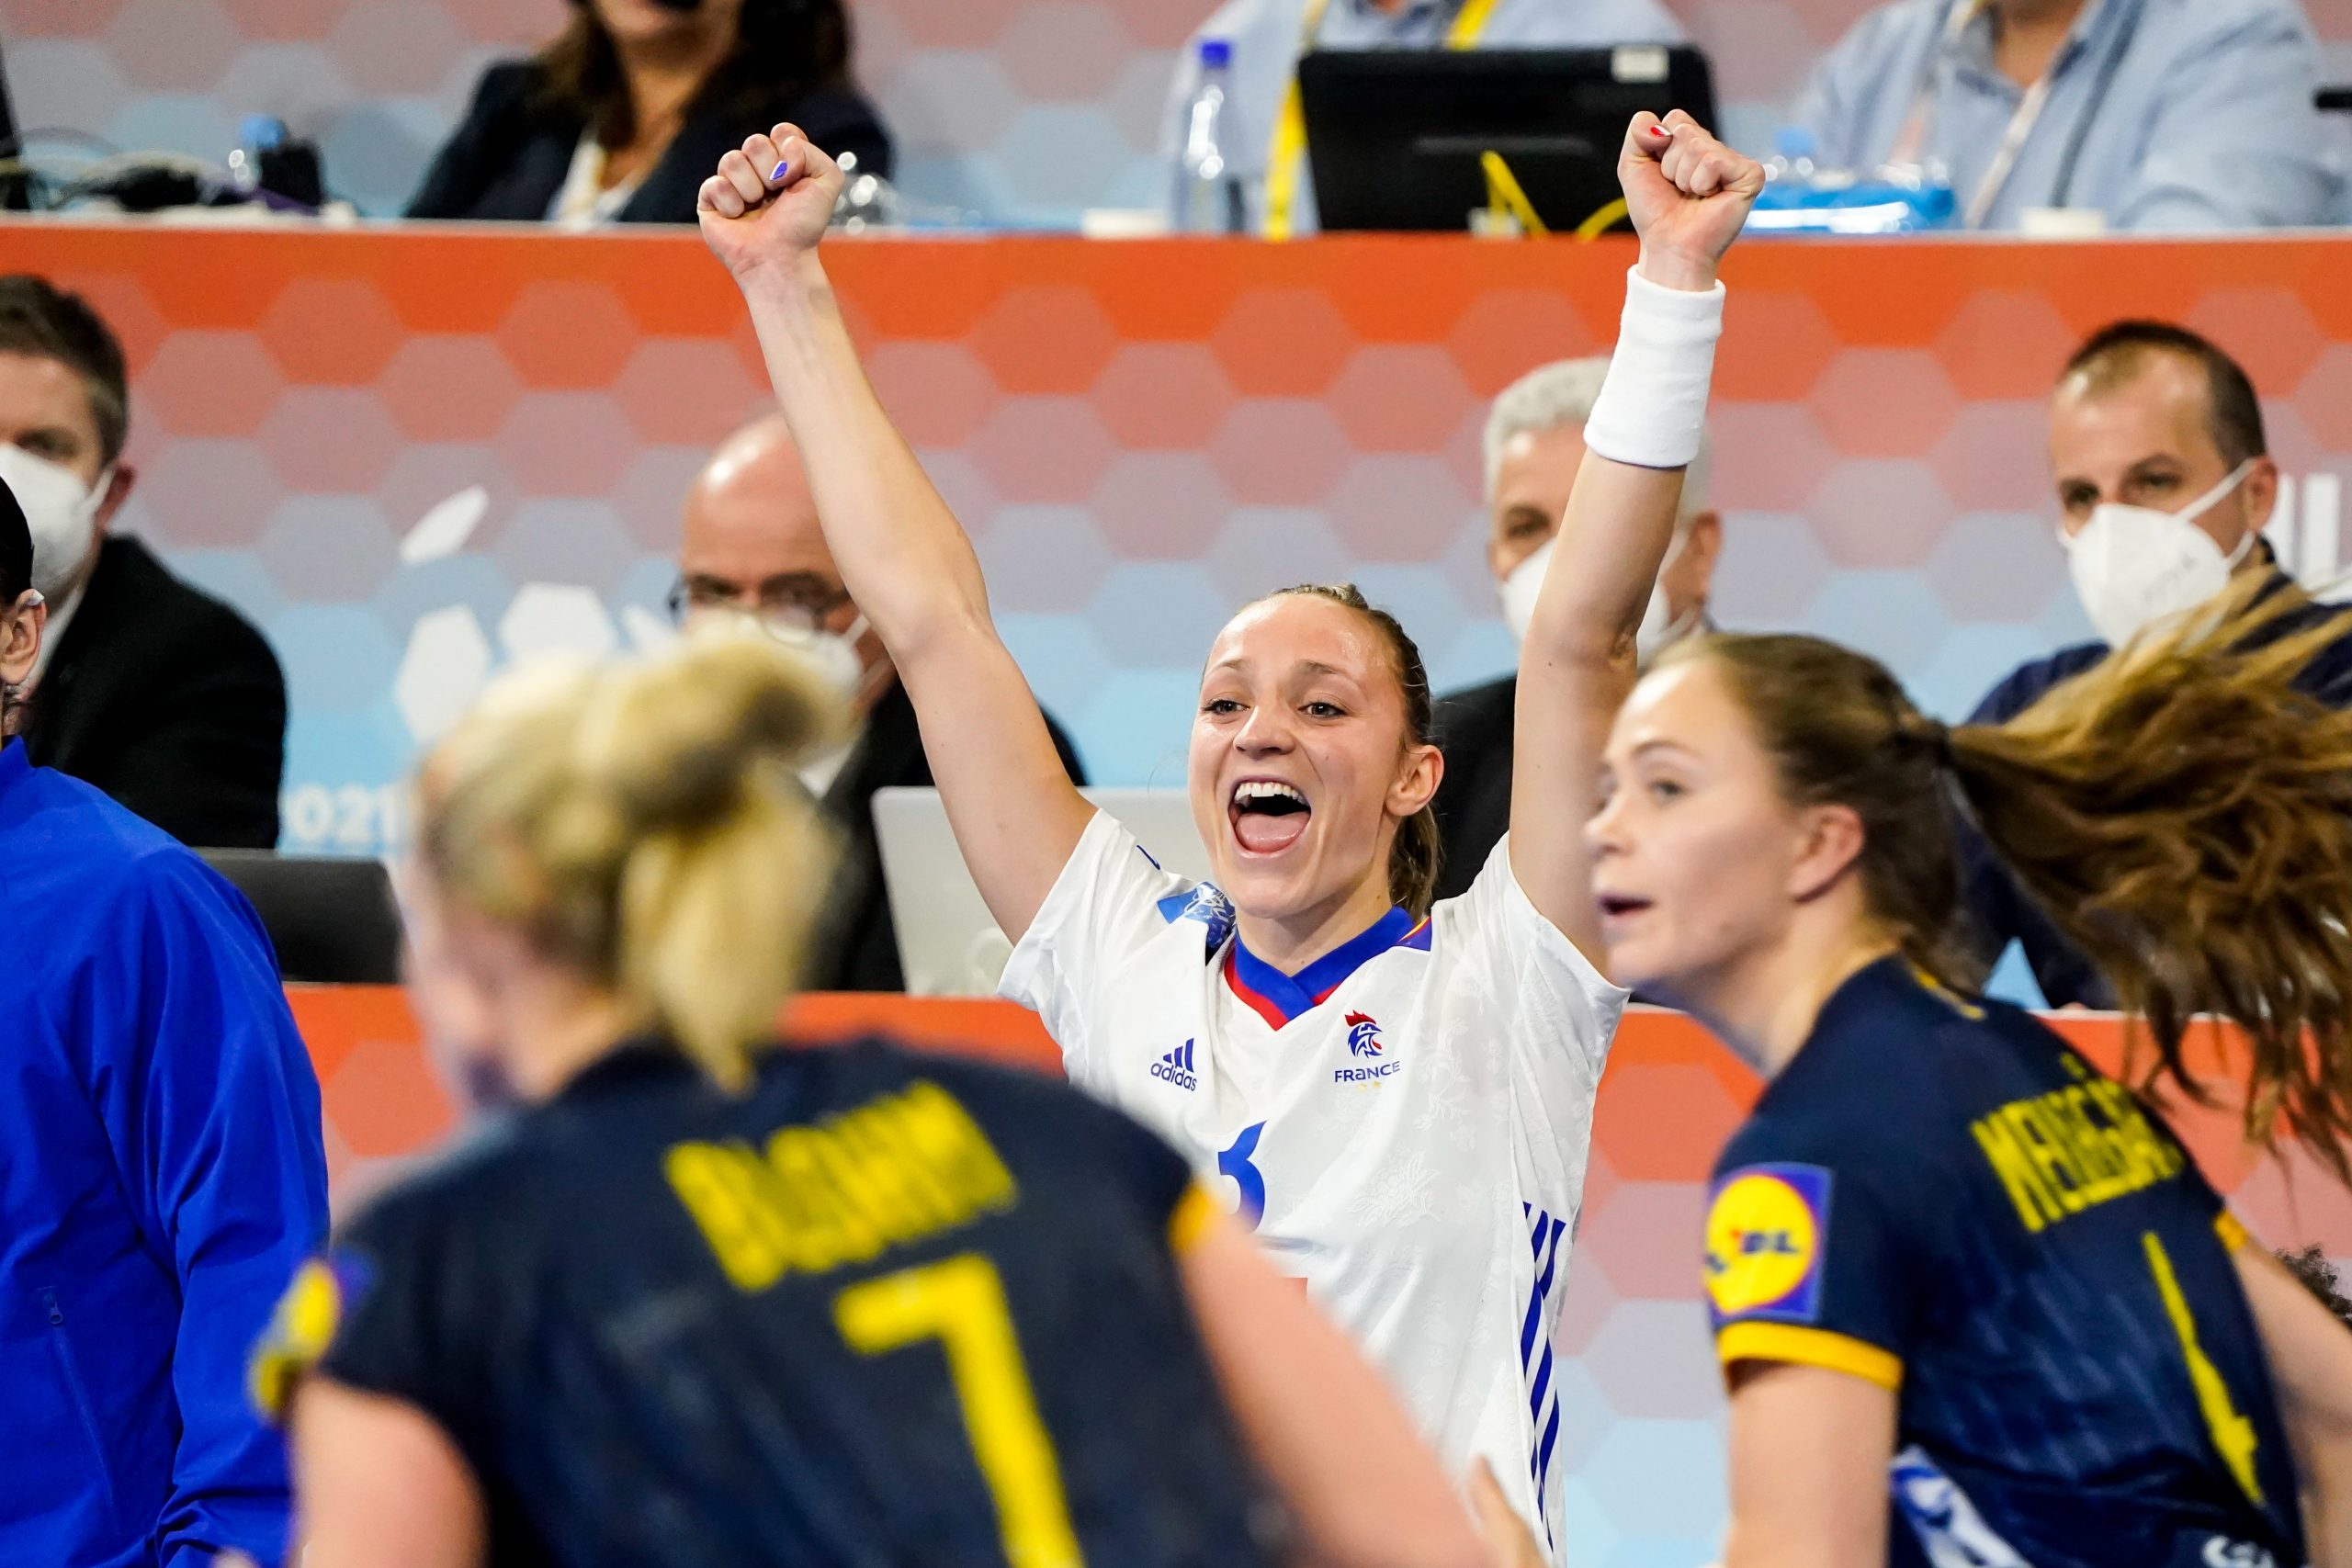 Alicia Toublanc célèbre la victoire de la France contre la Suède lors du mondial de handball